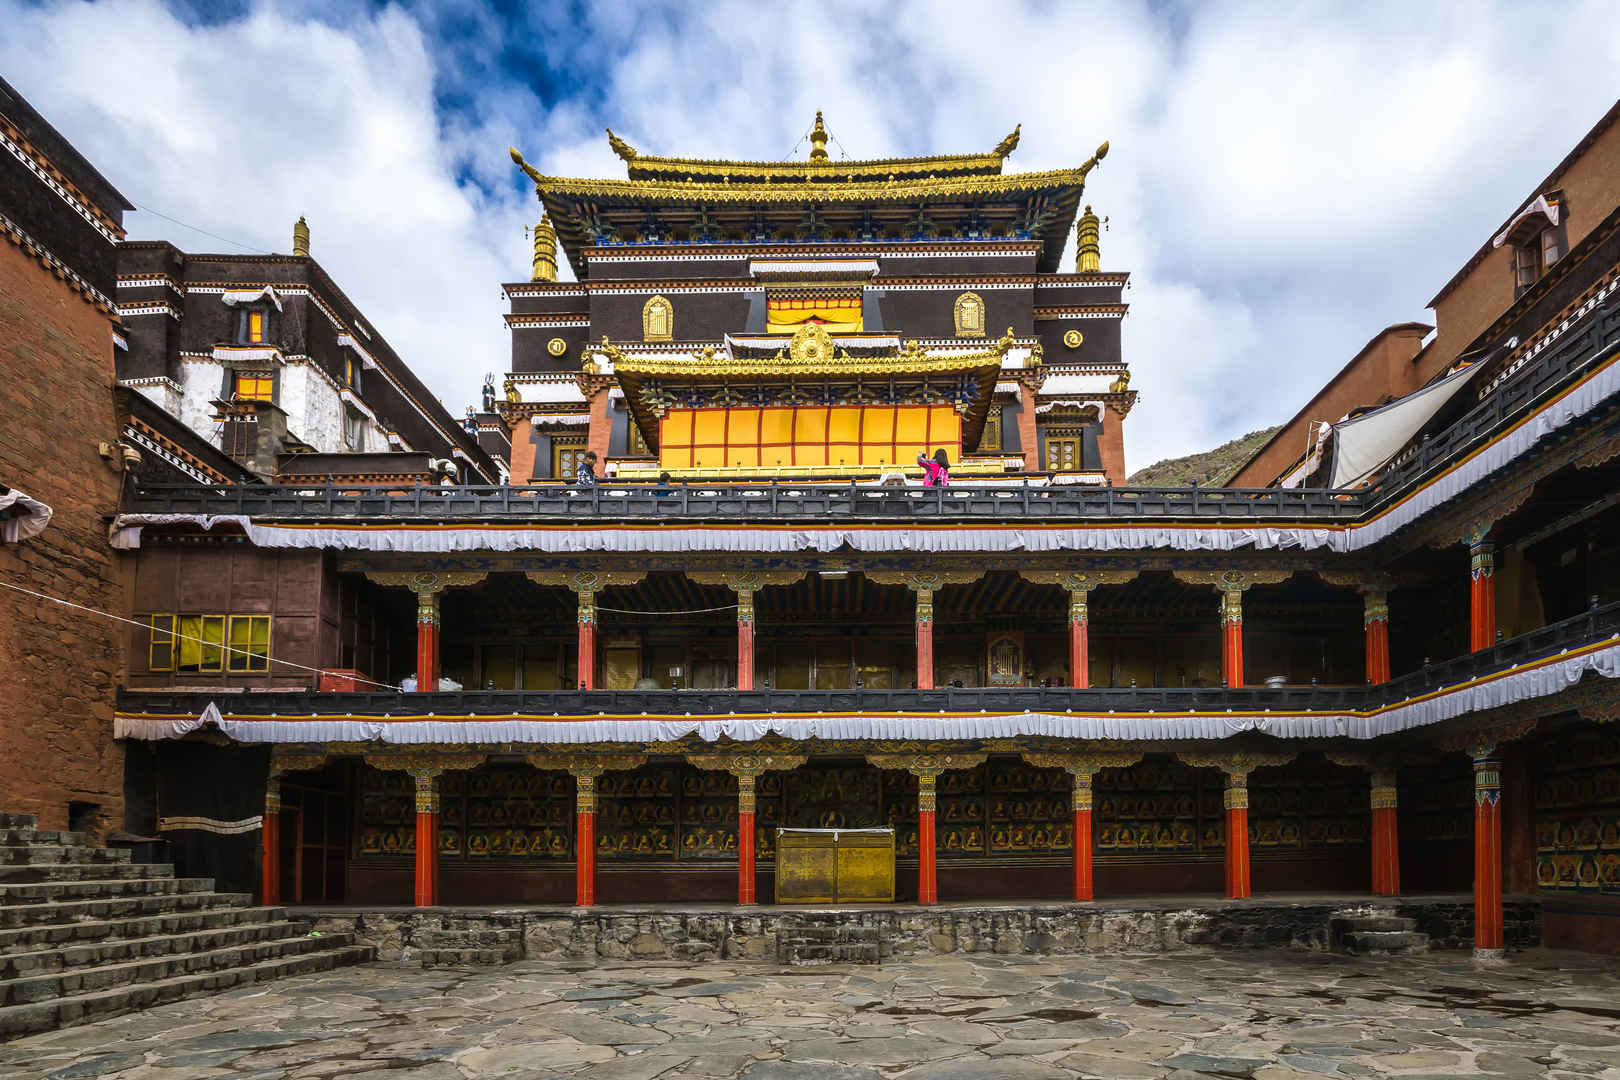 中国西藏的扎什伦布寺建筑图-